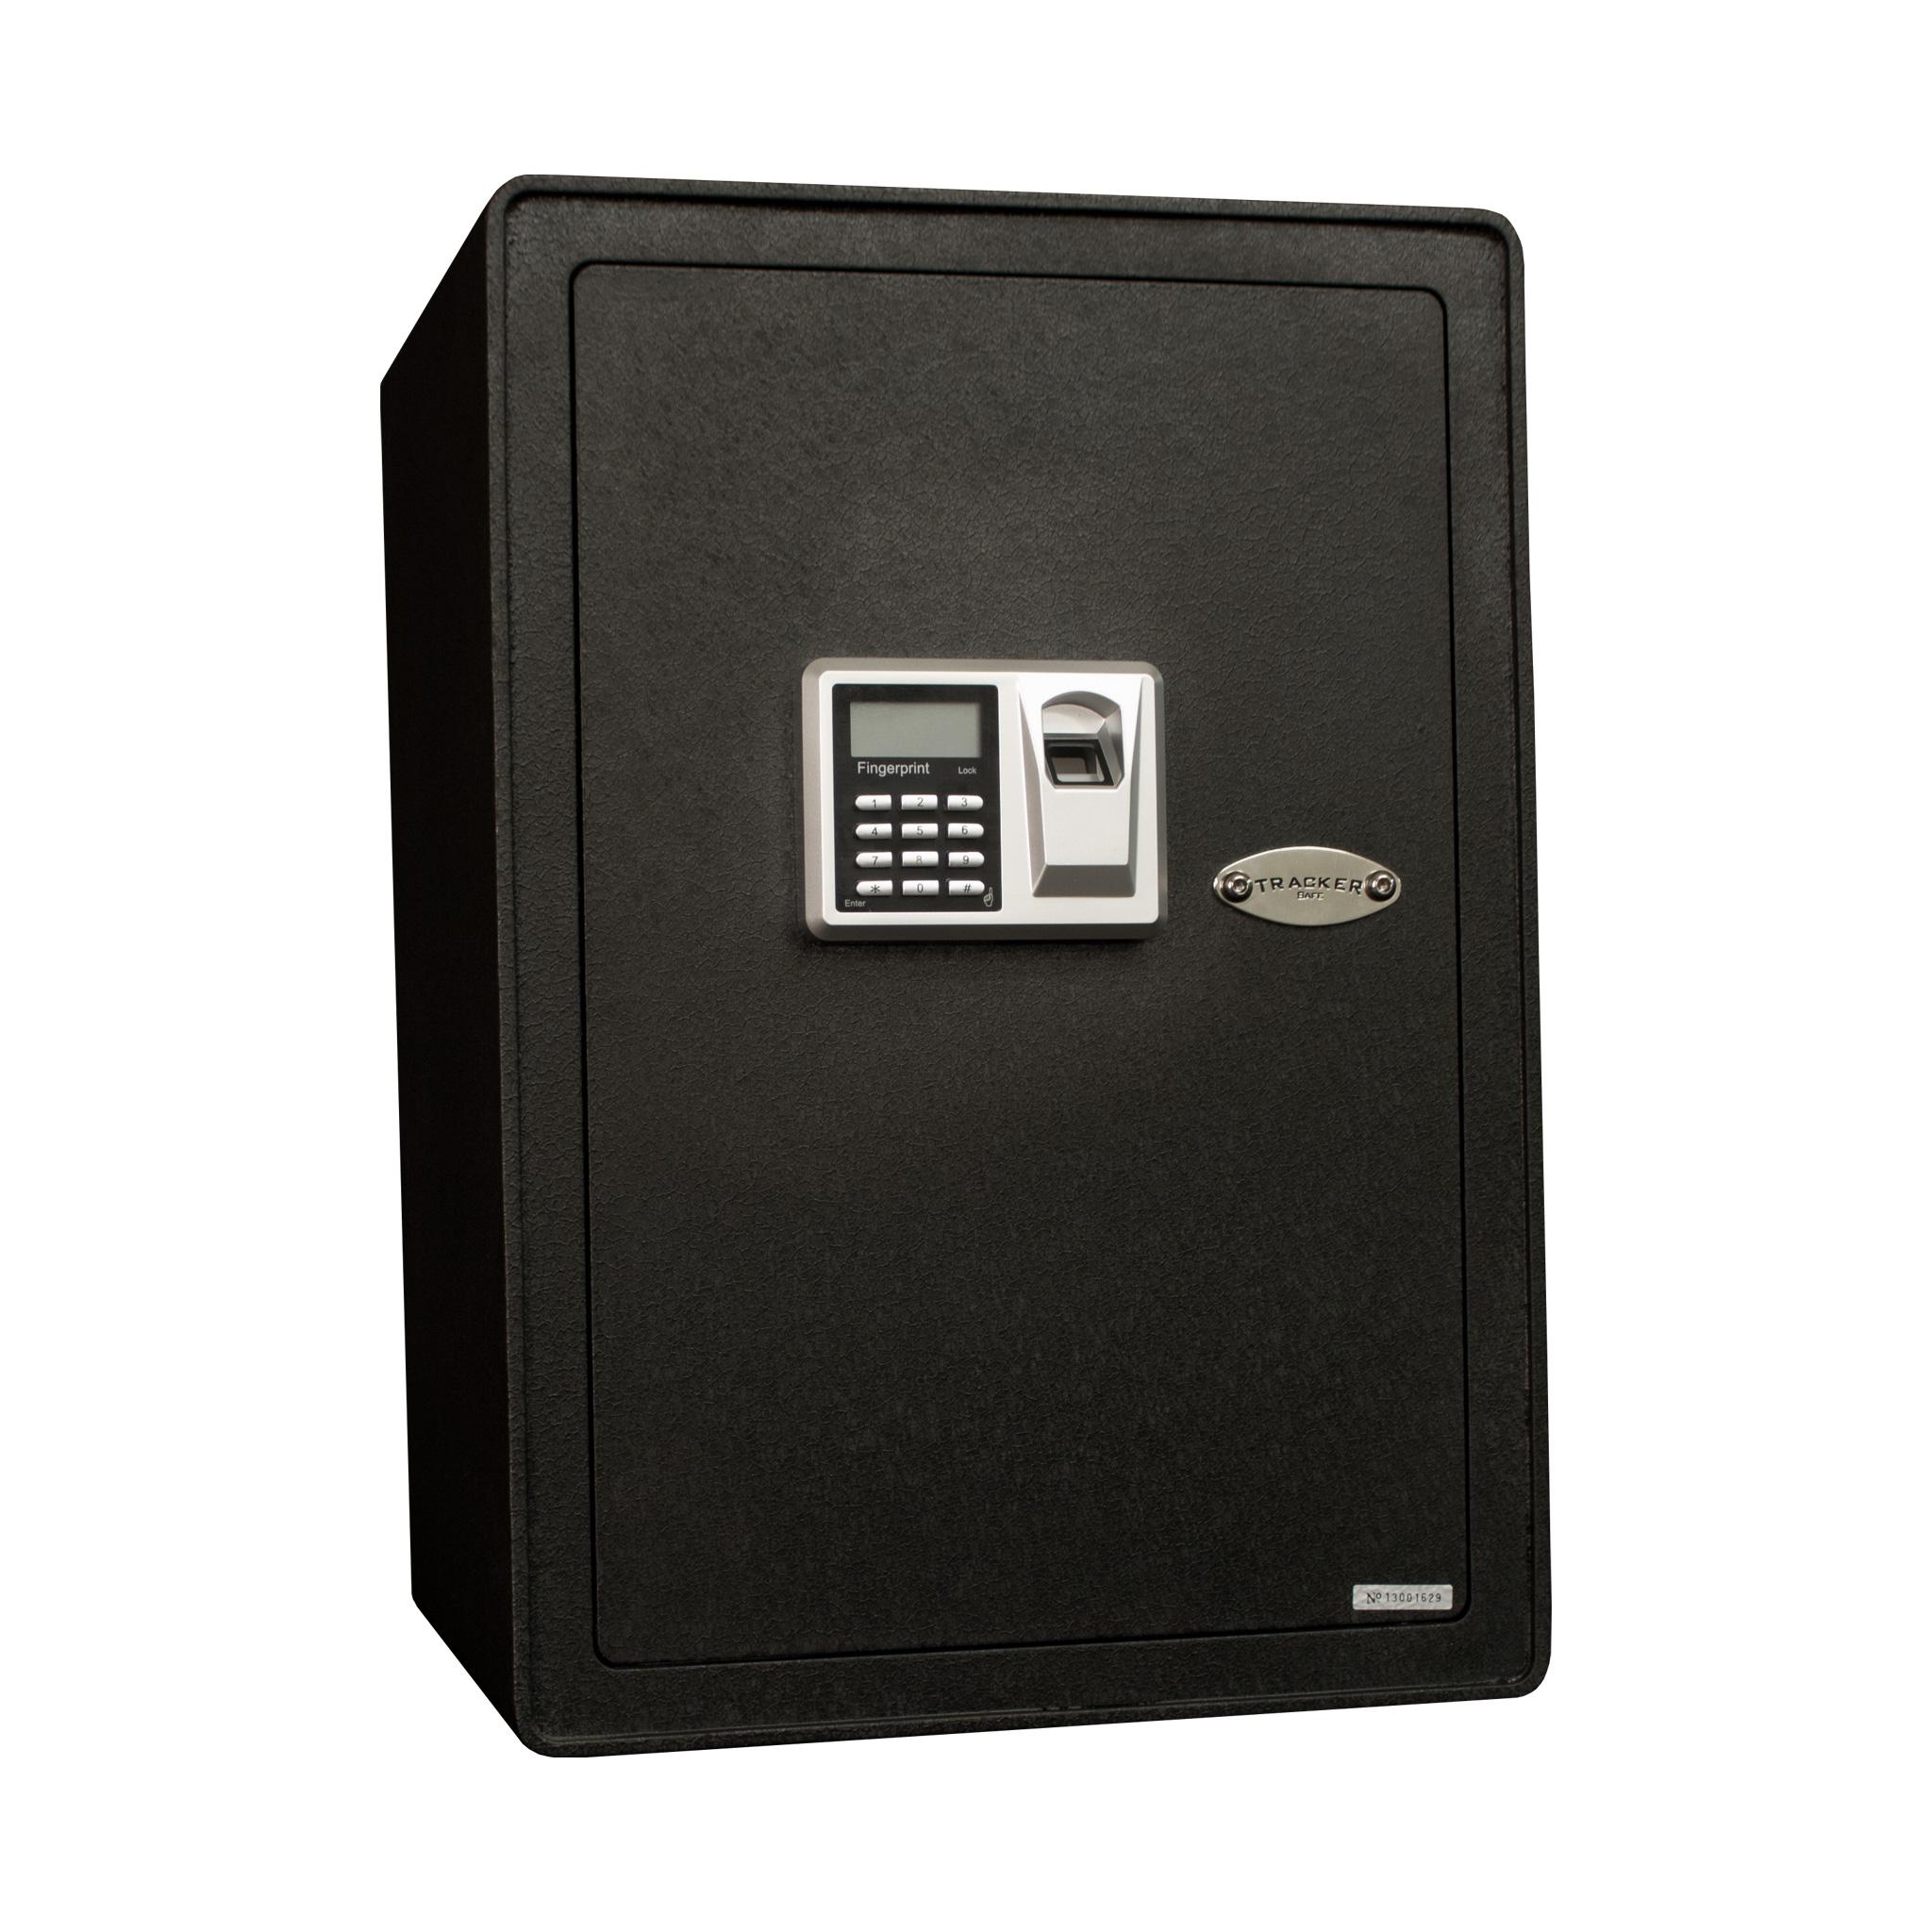 Tracker Safe DS090612-K Deposit Safe in Black with Key Lock